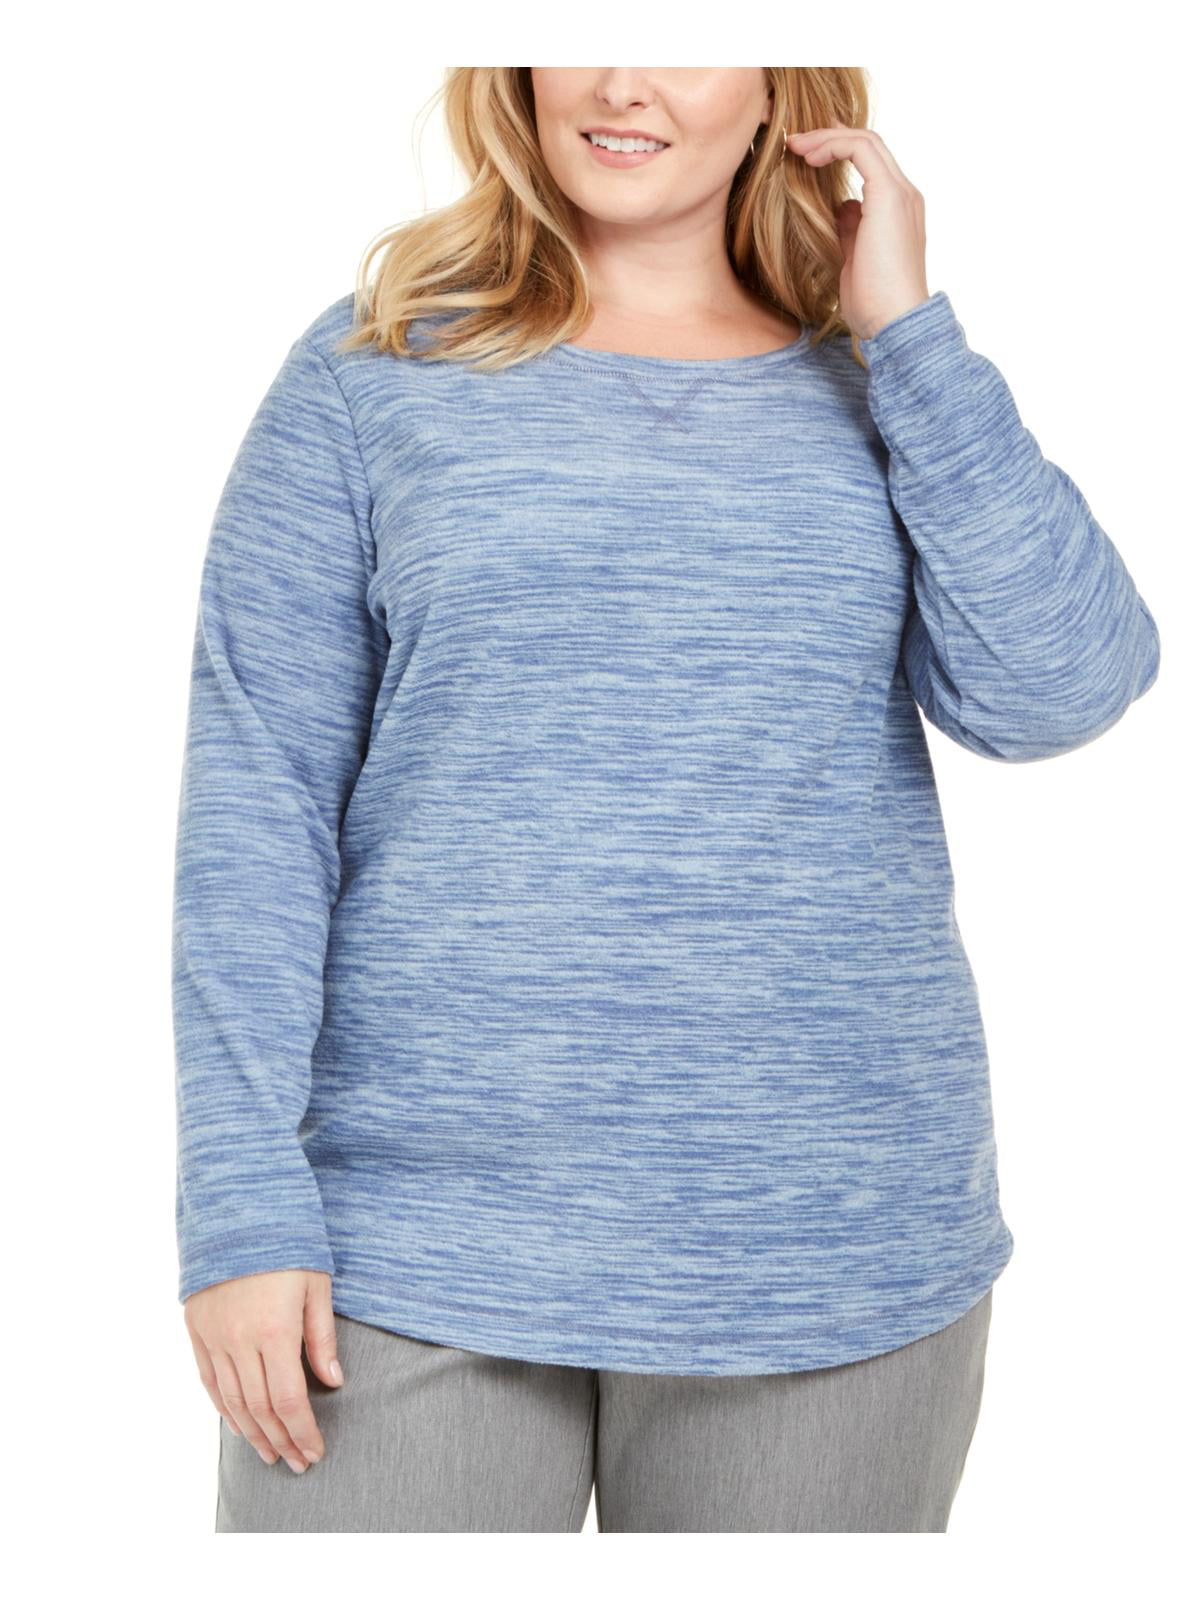 Karen Scott Sport Womens Plus Microfleece Comfy Shirts & Tops - Walmart.com